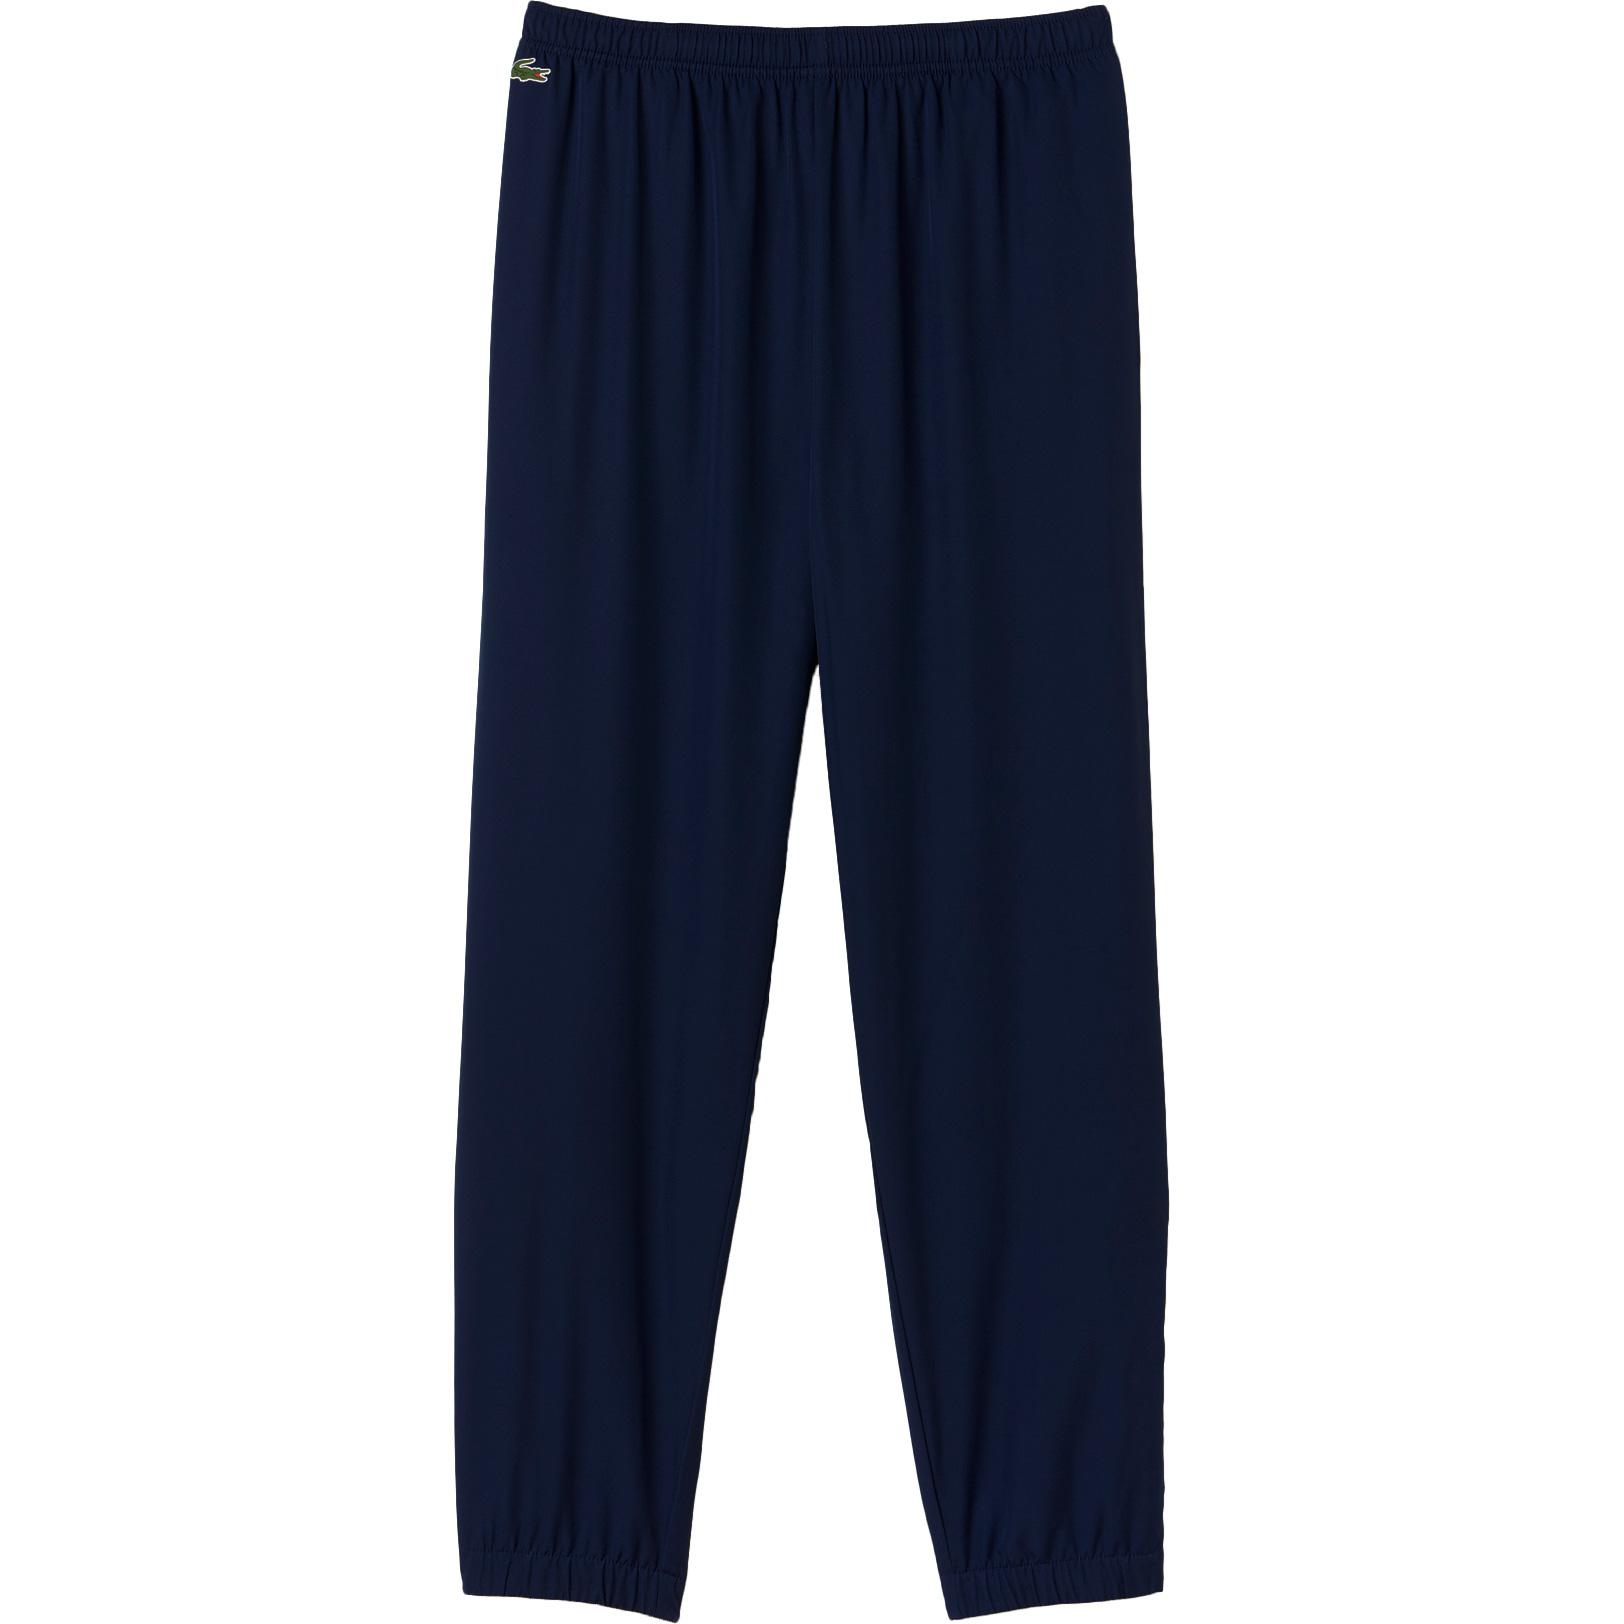 Lacoste Mens Contrast Band Sweatpants - Navy Blue - Tennisnuts.com